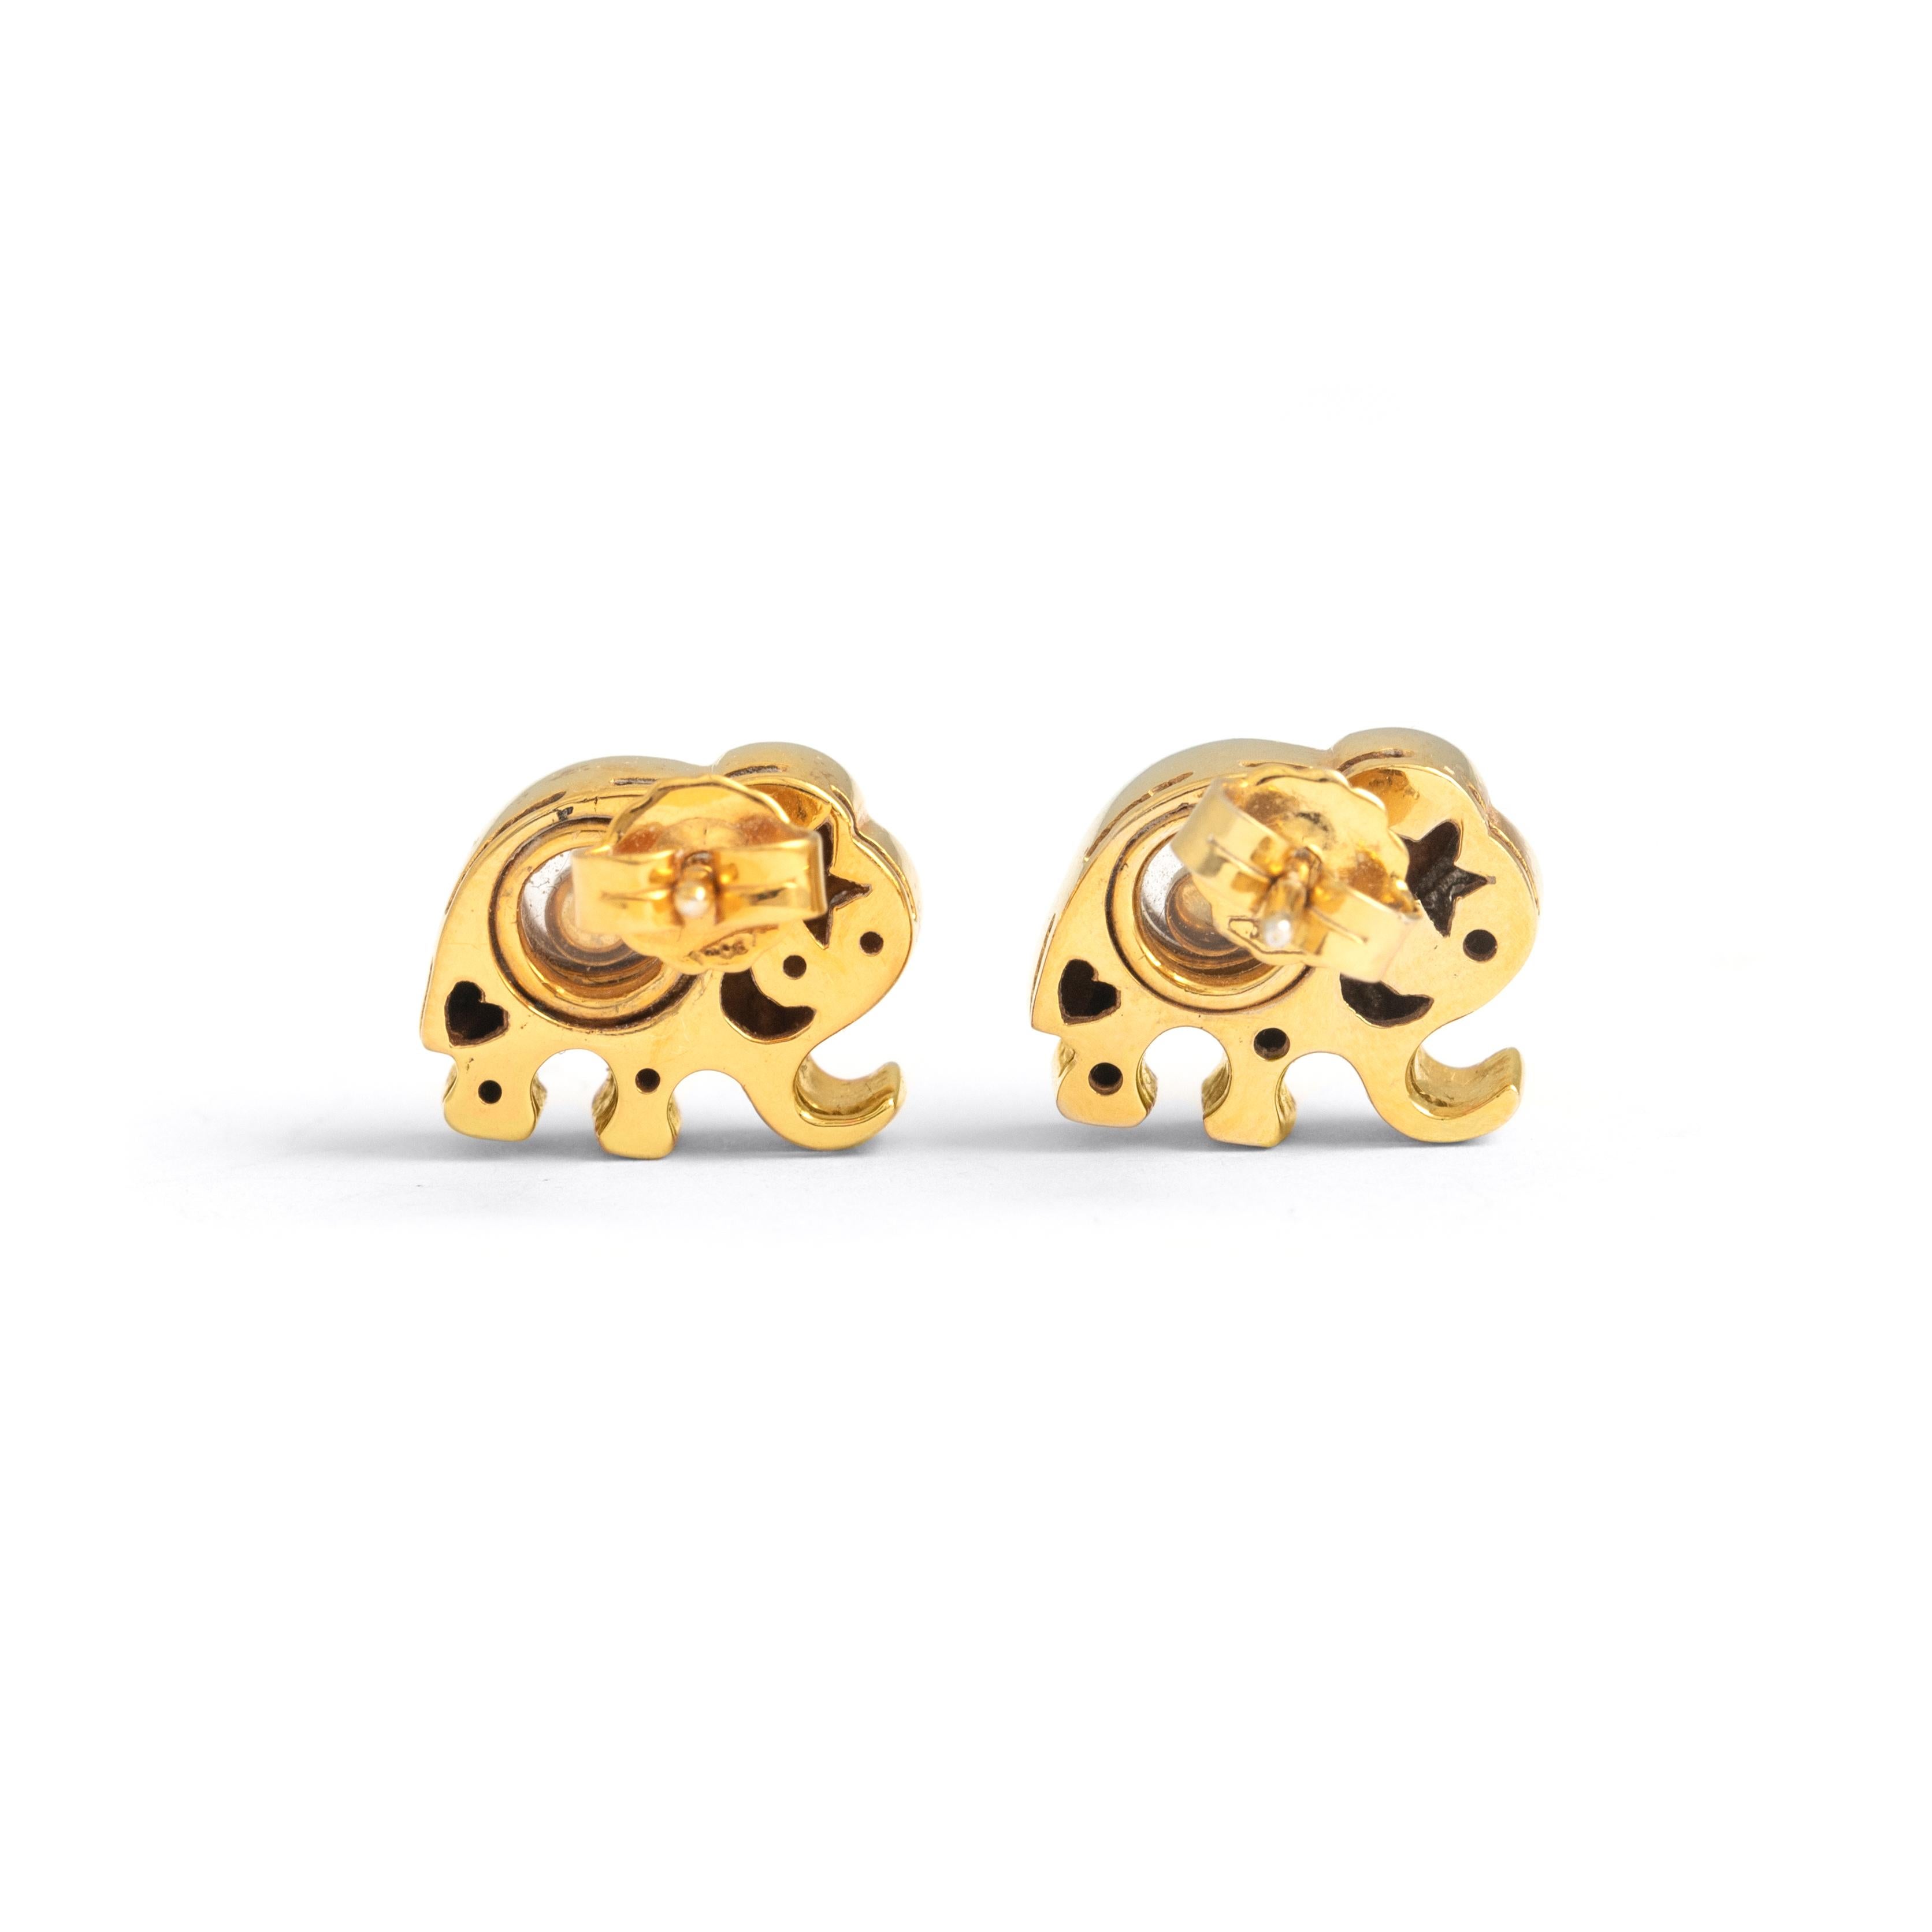 Elefanten-Design, Diamant auf Gelbgold 18K Ohrringe.
Tanzende Diamanten, die sich sanft zwischen zwei Kristallen bewegen und wirbeln.
Größe: 1,40 Zentimeter x 1,20 Zentimeter.

Gesamtgewicht: 9,57 Gramm.
